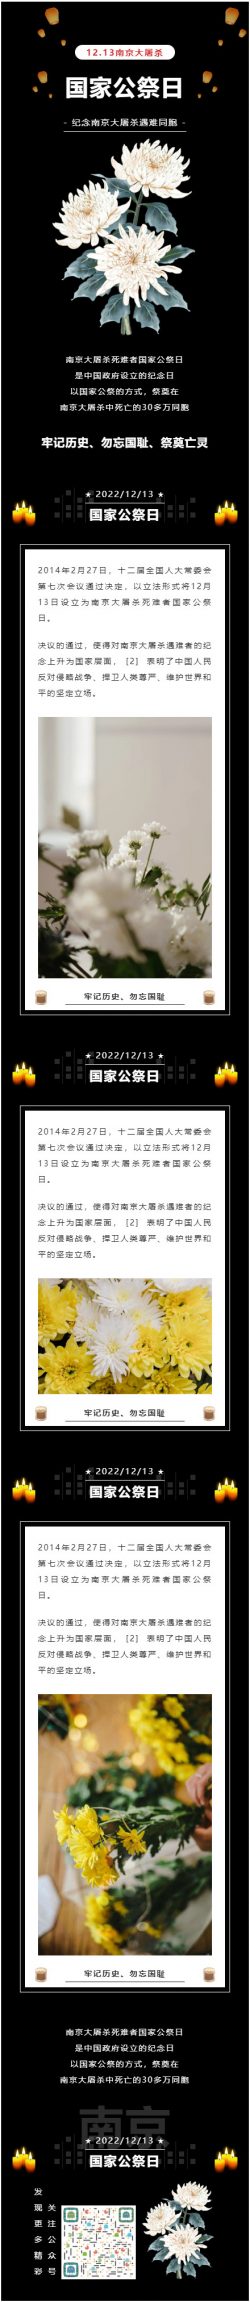 微信关于南京大屠杀死难者国家公祭日推文模板素材资料推送文章